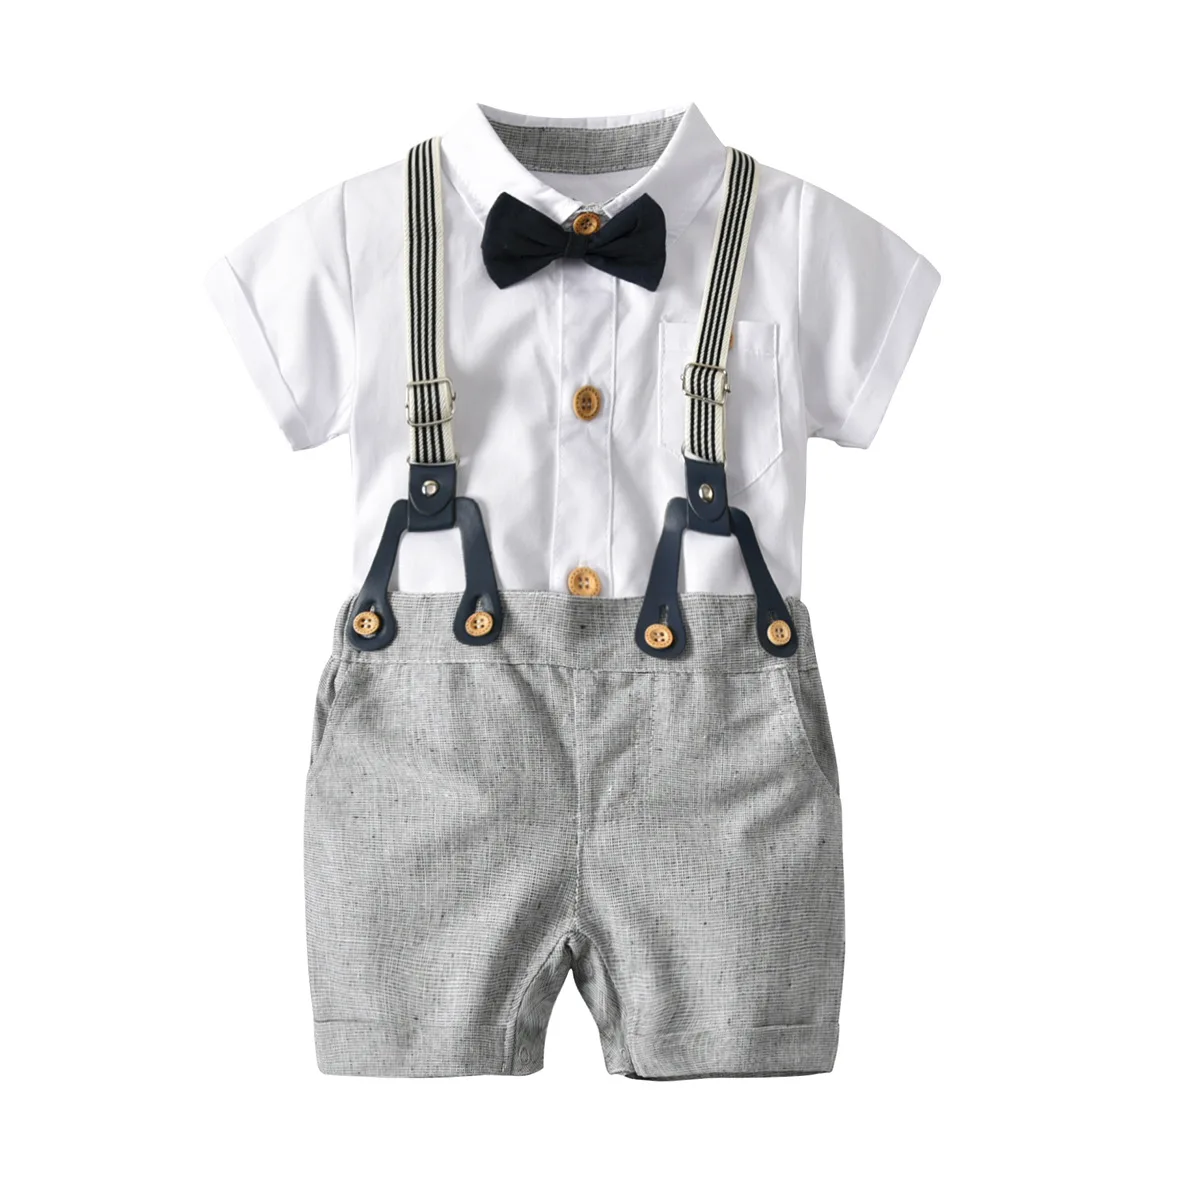 Trend frontier Discount Shop IMEKIS Baby Boys Formal Suit Gentleman ...